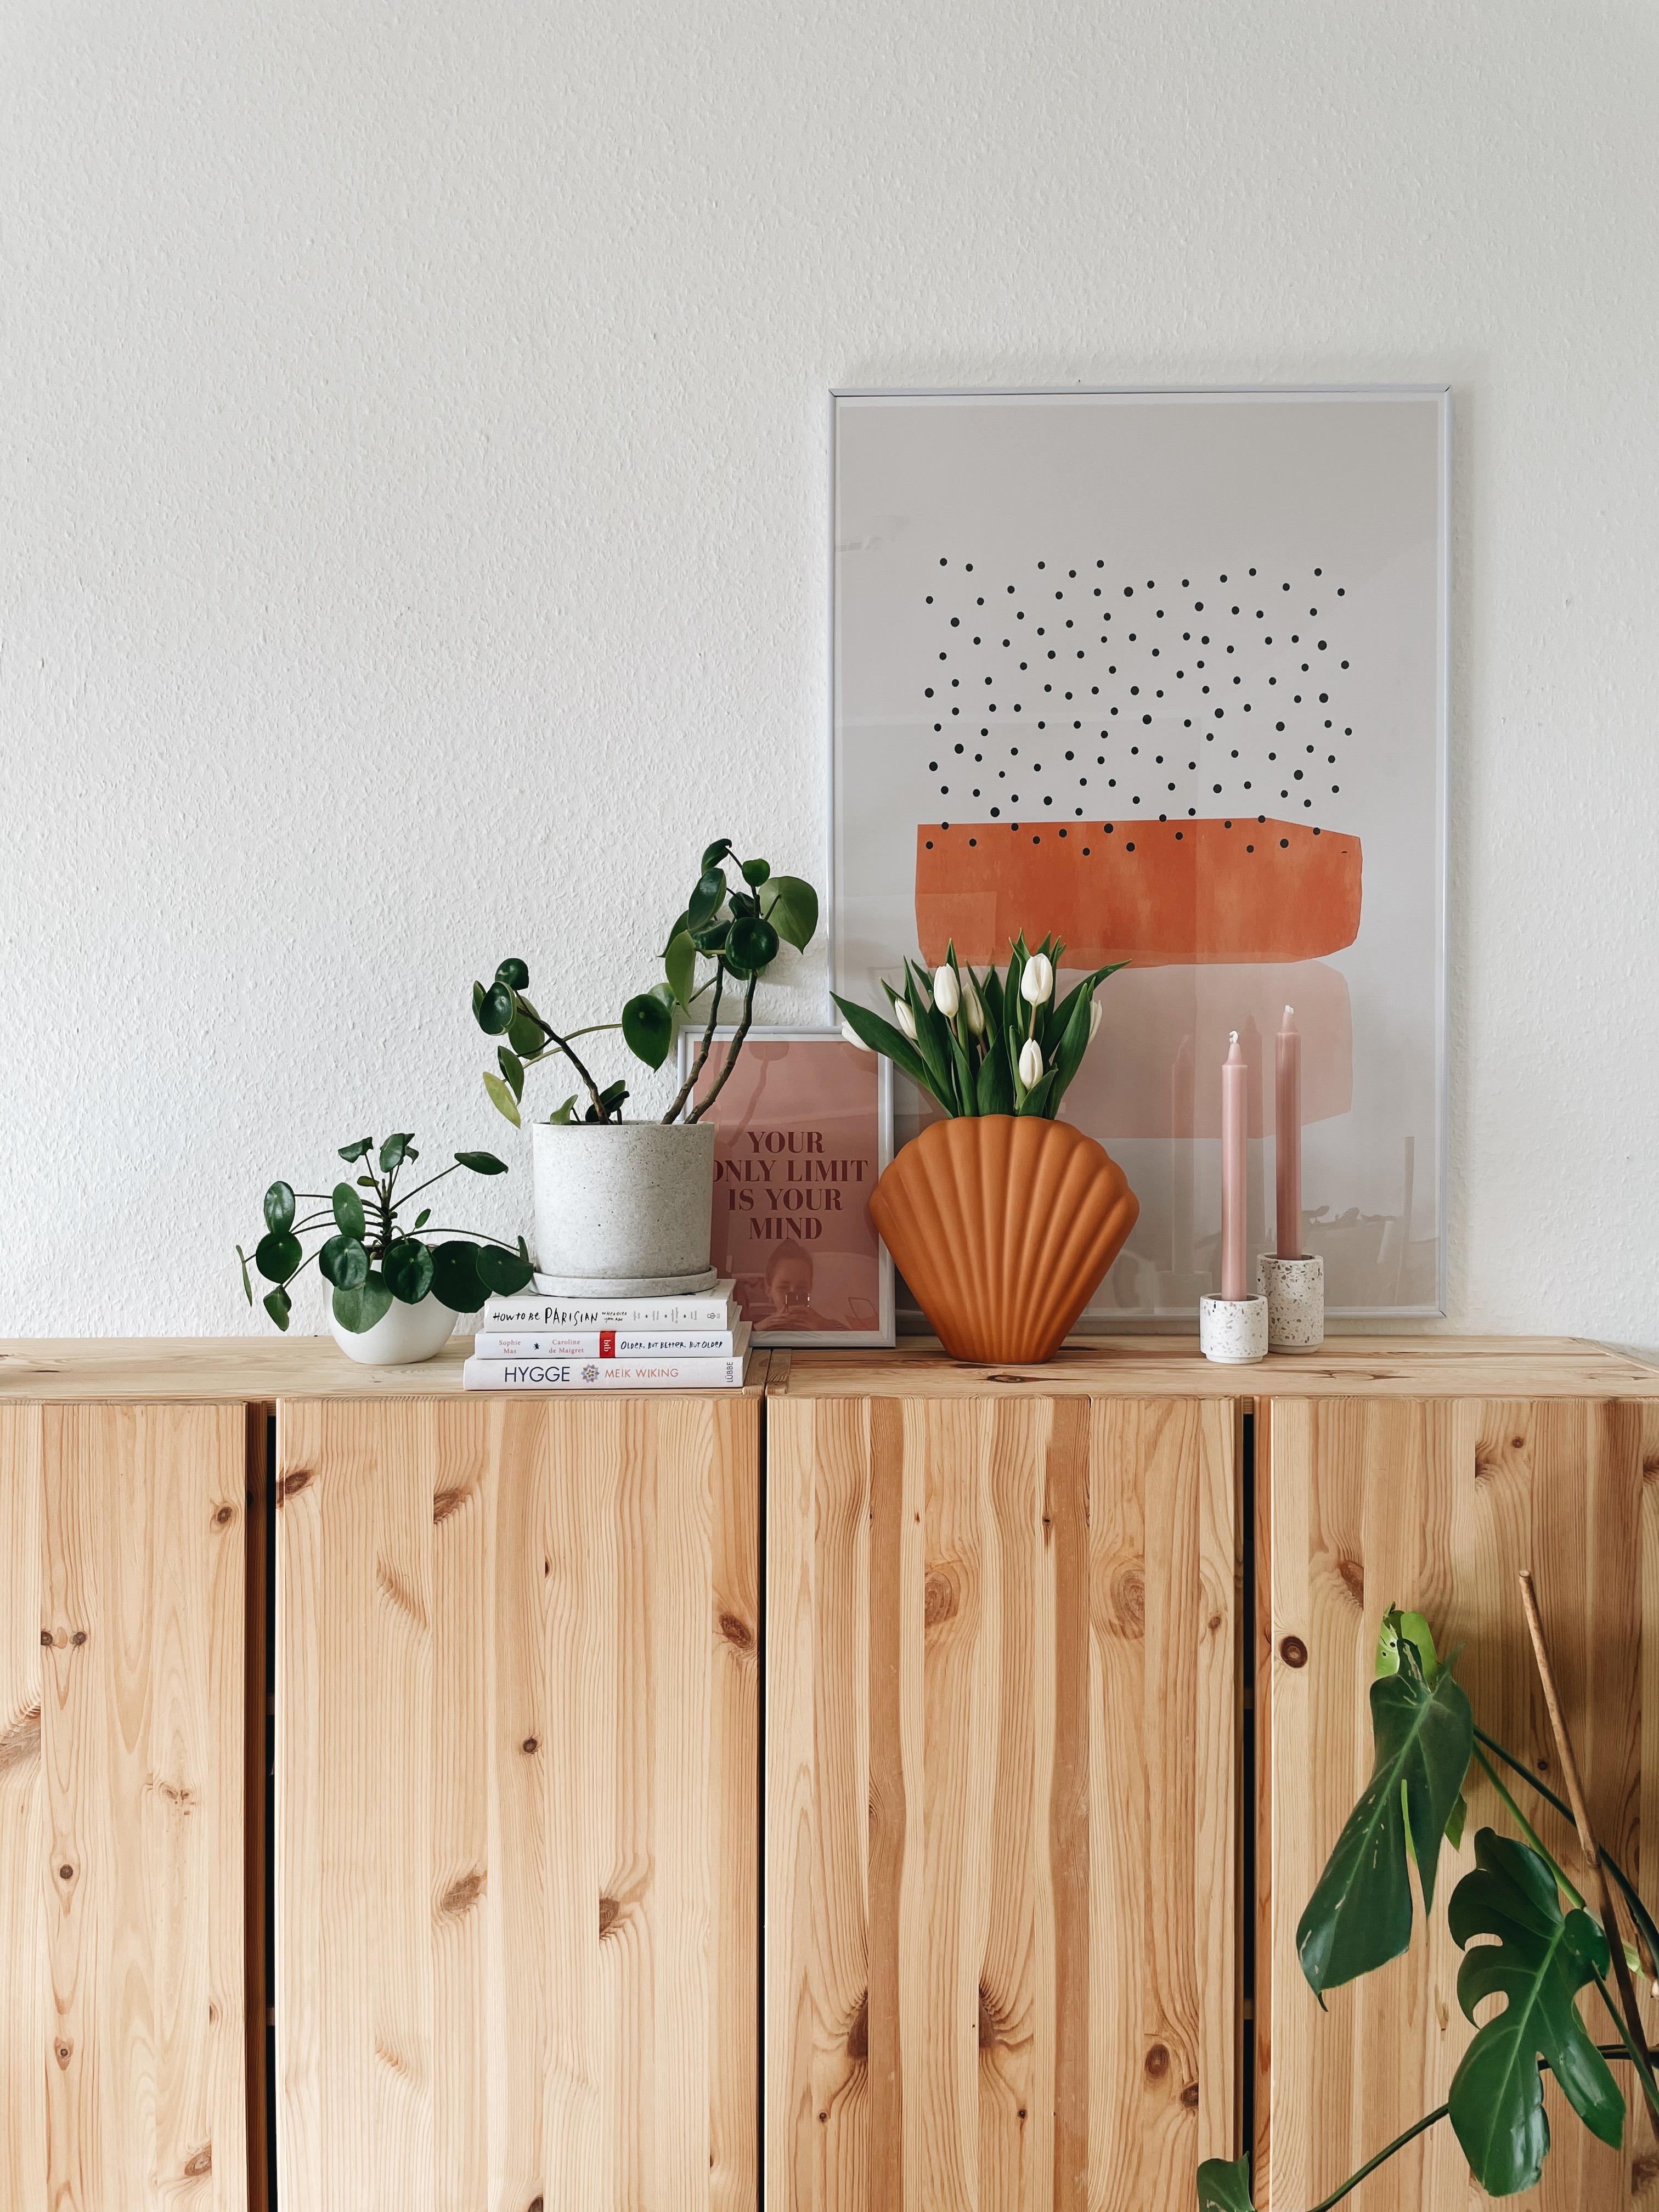 Liebste Ecke 🧡
#couchstyle #wohnzimmer #details #frühling #livingroominspo 